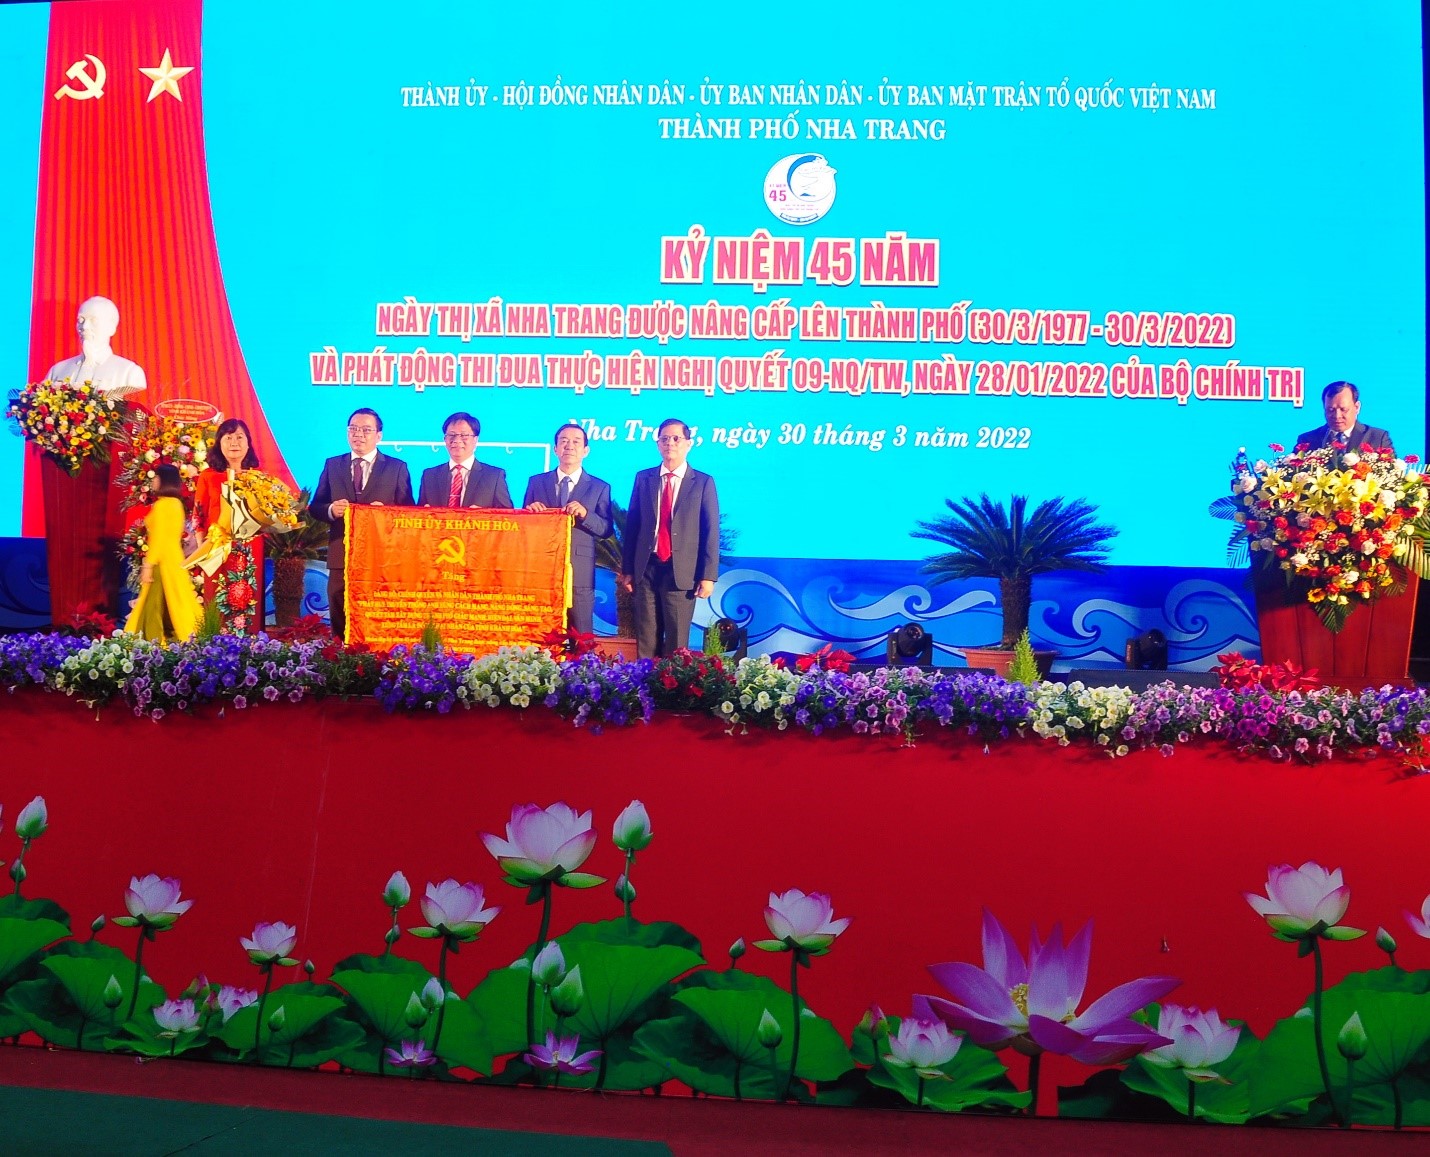 Tỉnh Ủy Khánh Hòa tặng bức trướng đến Nhân Dân, Cán Bộ Thành Phố Nha Trang nhân kỷ niệm 45 năm Ngày Thị xã Nha Trang nâng cấp lên Thành phố (30/3/1977-30/3/2022)